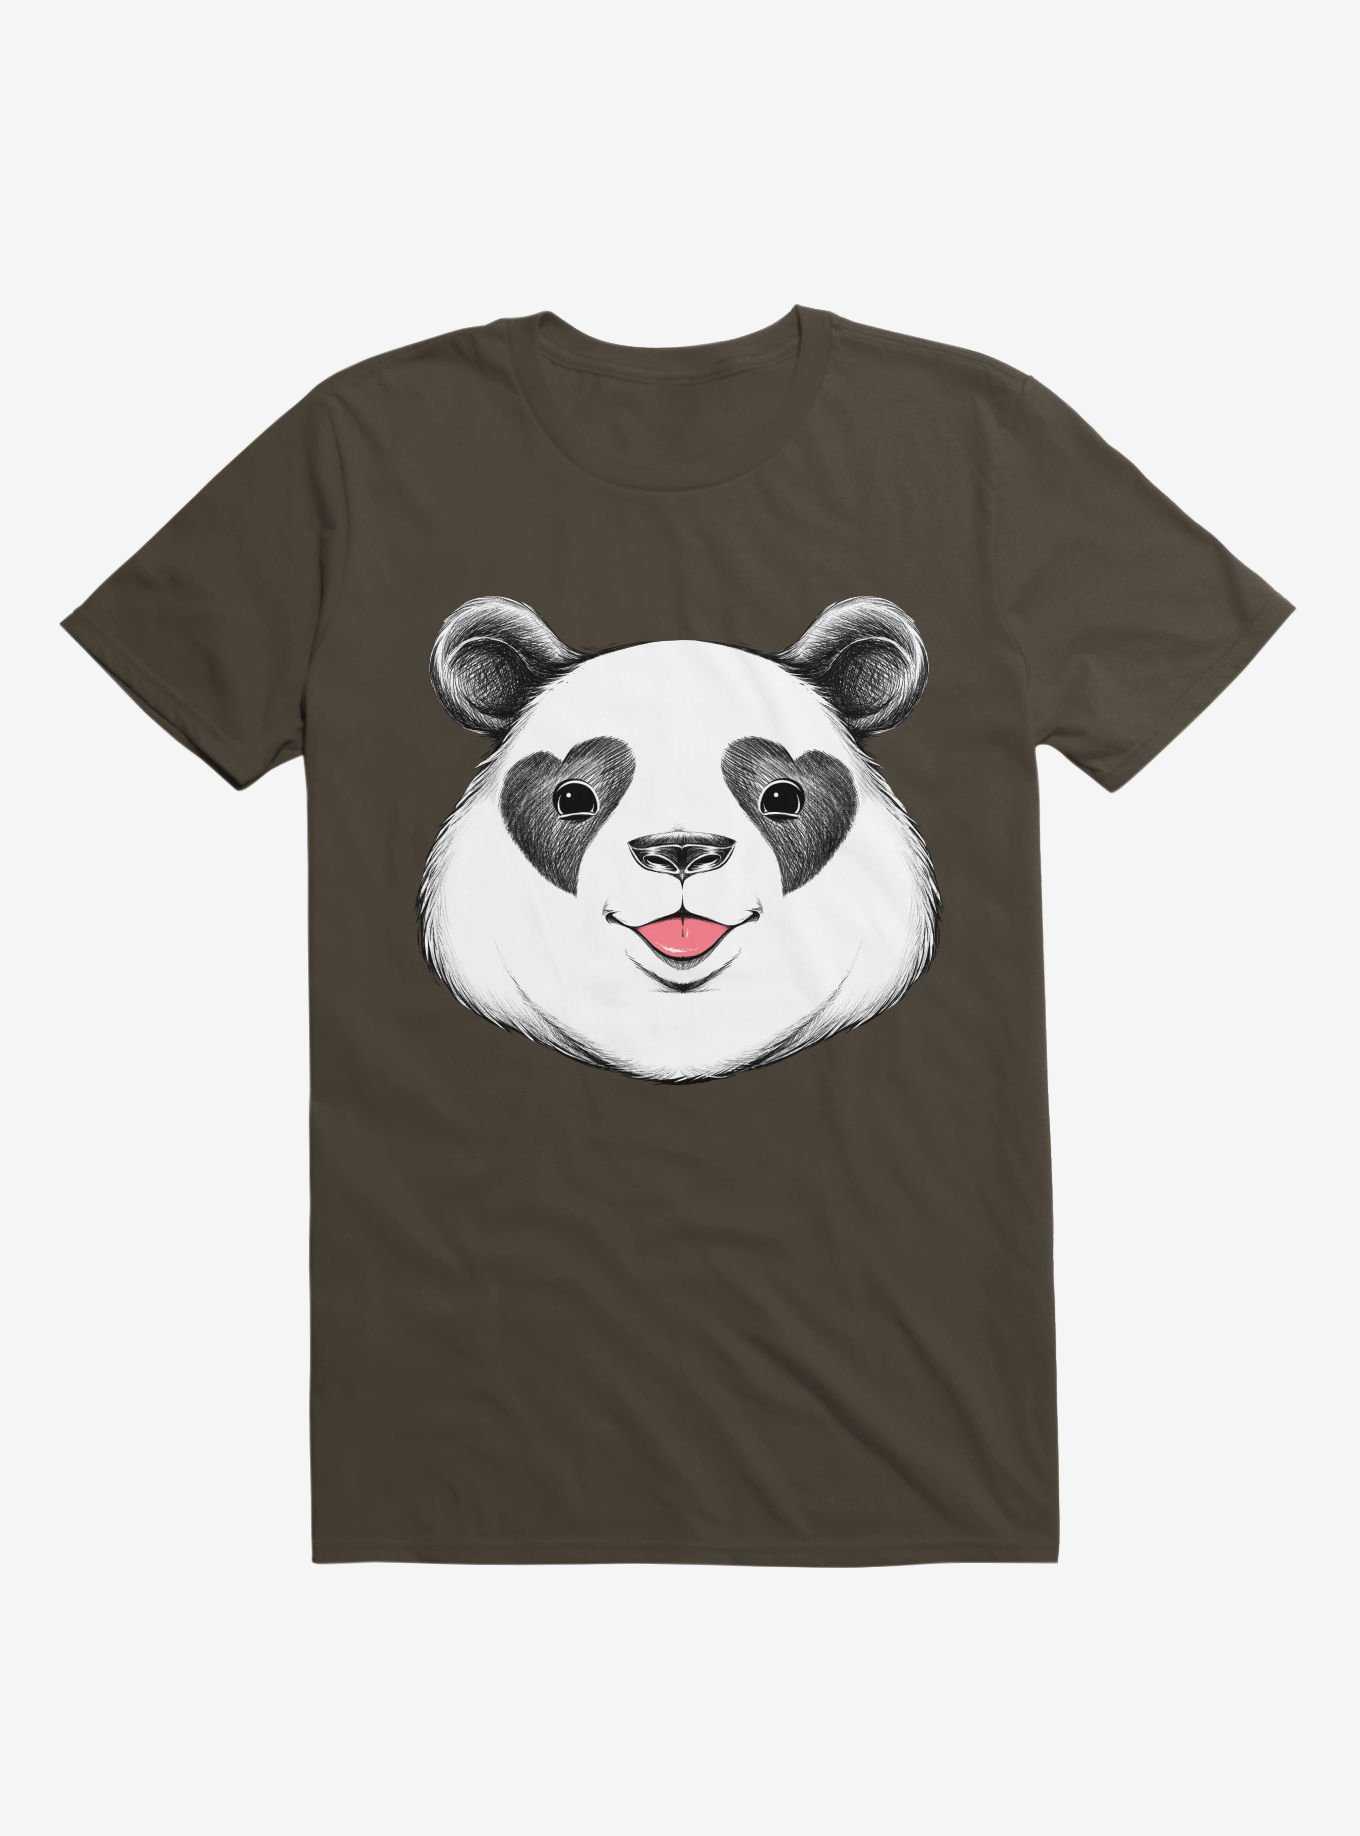 Panda Love T-Shirt, , hi-res